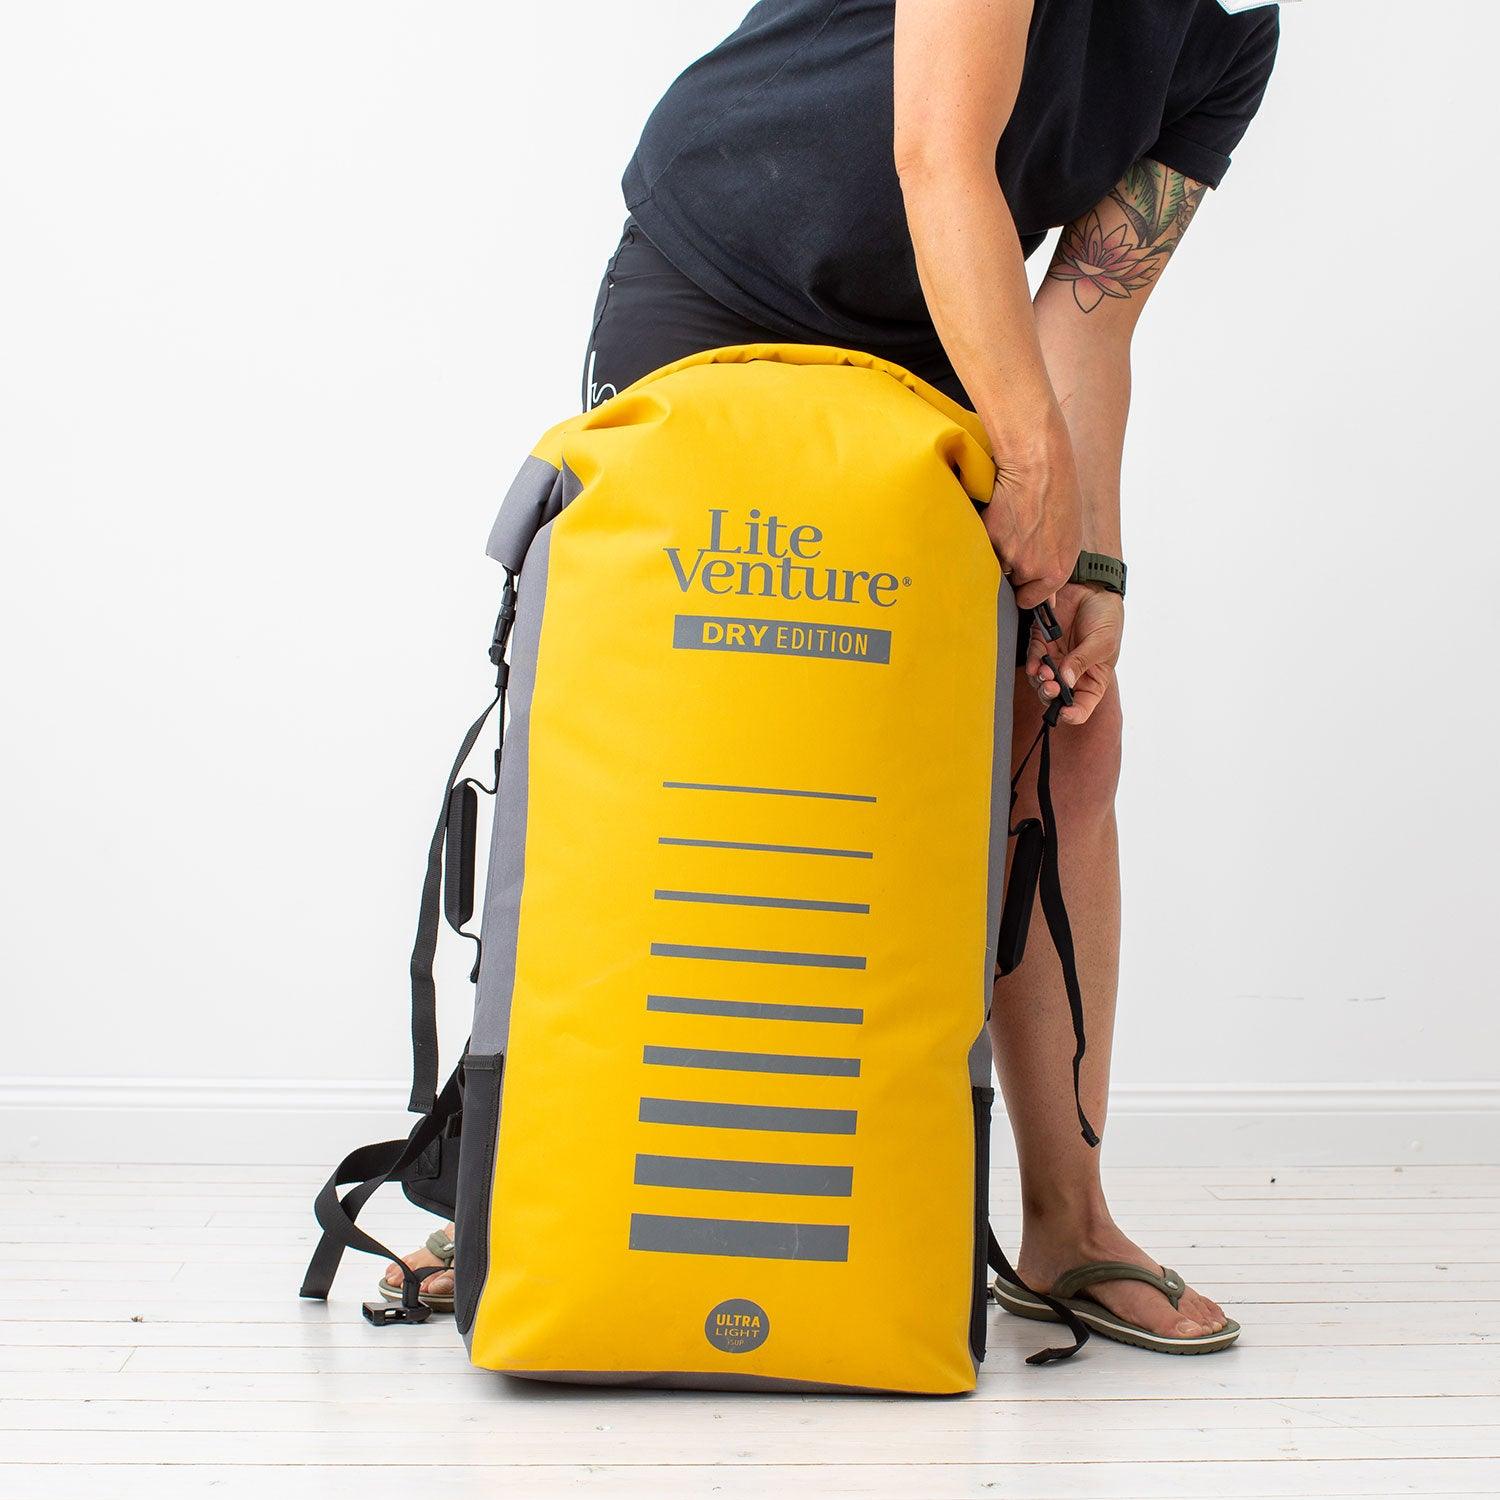 Produktbild von zubehör " Packsack / Dry Bag-zum Ultra Light iSUP " der Marke Lite Venture für 99.95 €. Erhältlich online bei Lite Venture ( www.liteventure.de )